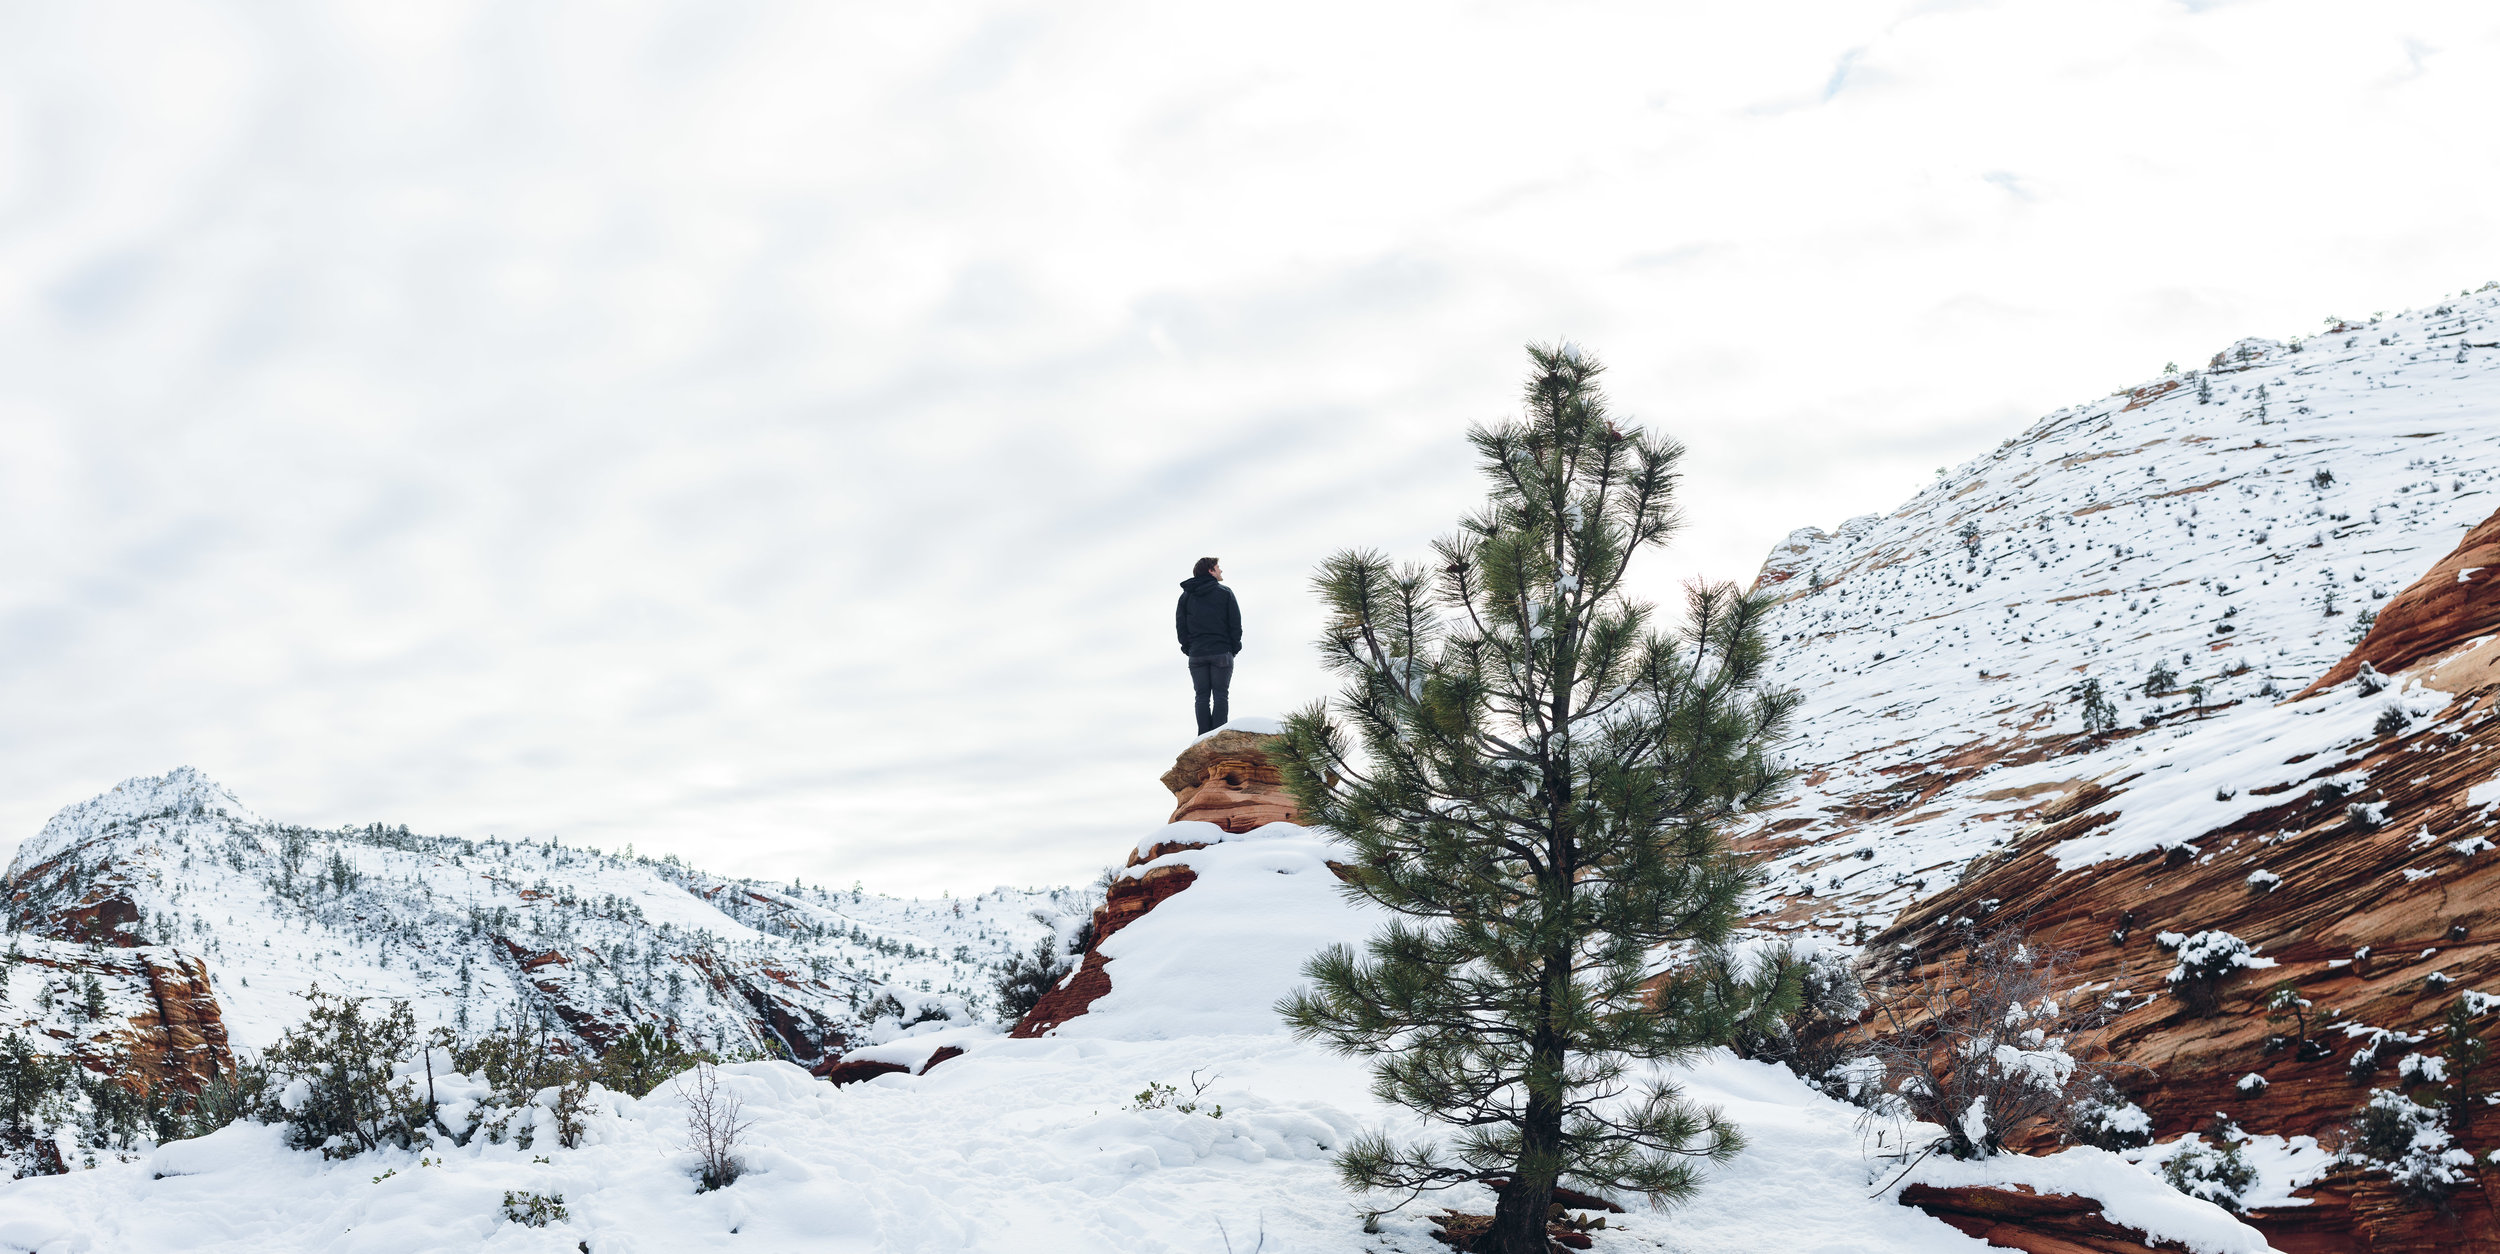 Zion National Park winter portraits